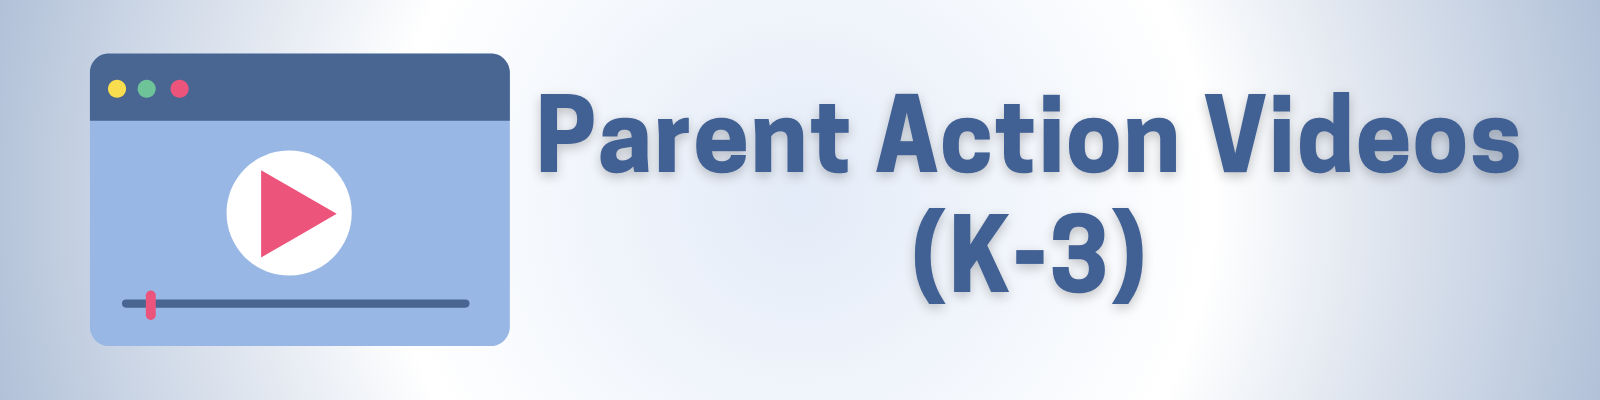 parent action videos